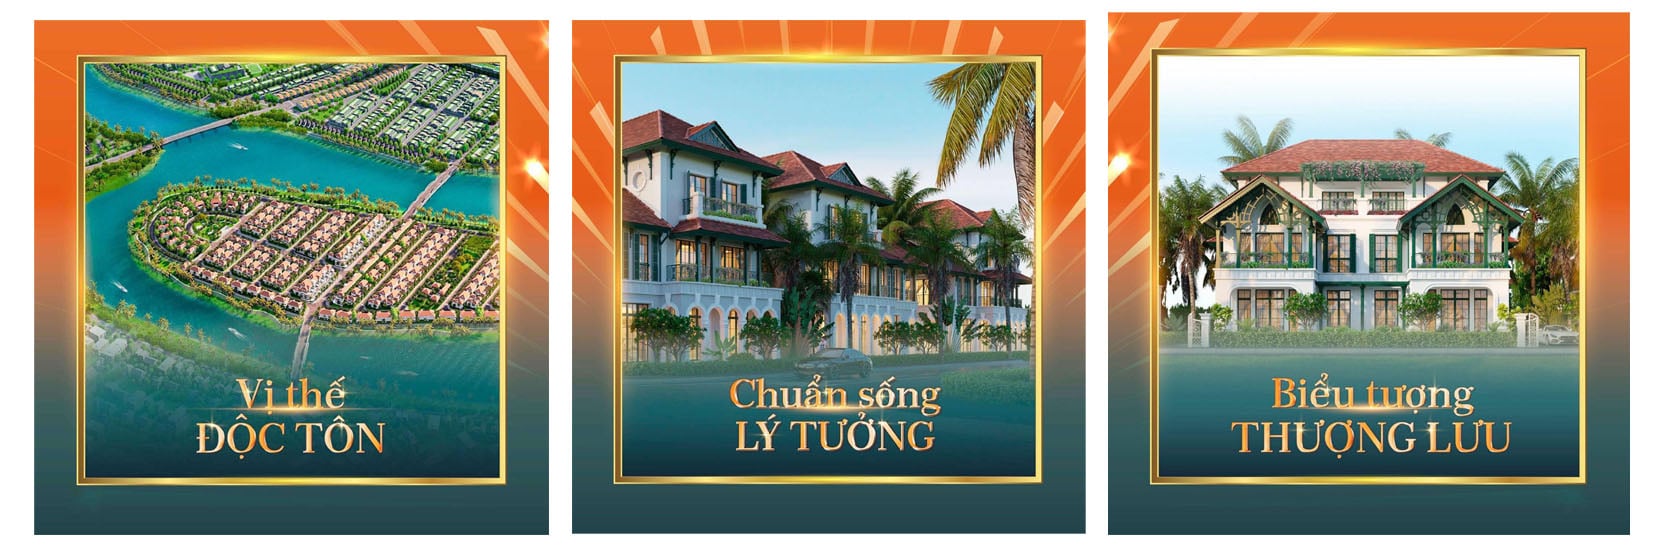 Sunneva Island và khát vọng kiến tạo khu đô thị tầm cỡ quốc tế của Sun Group tại Đà Nẵng - 25